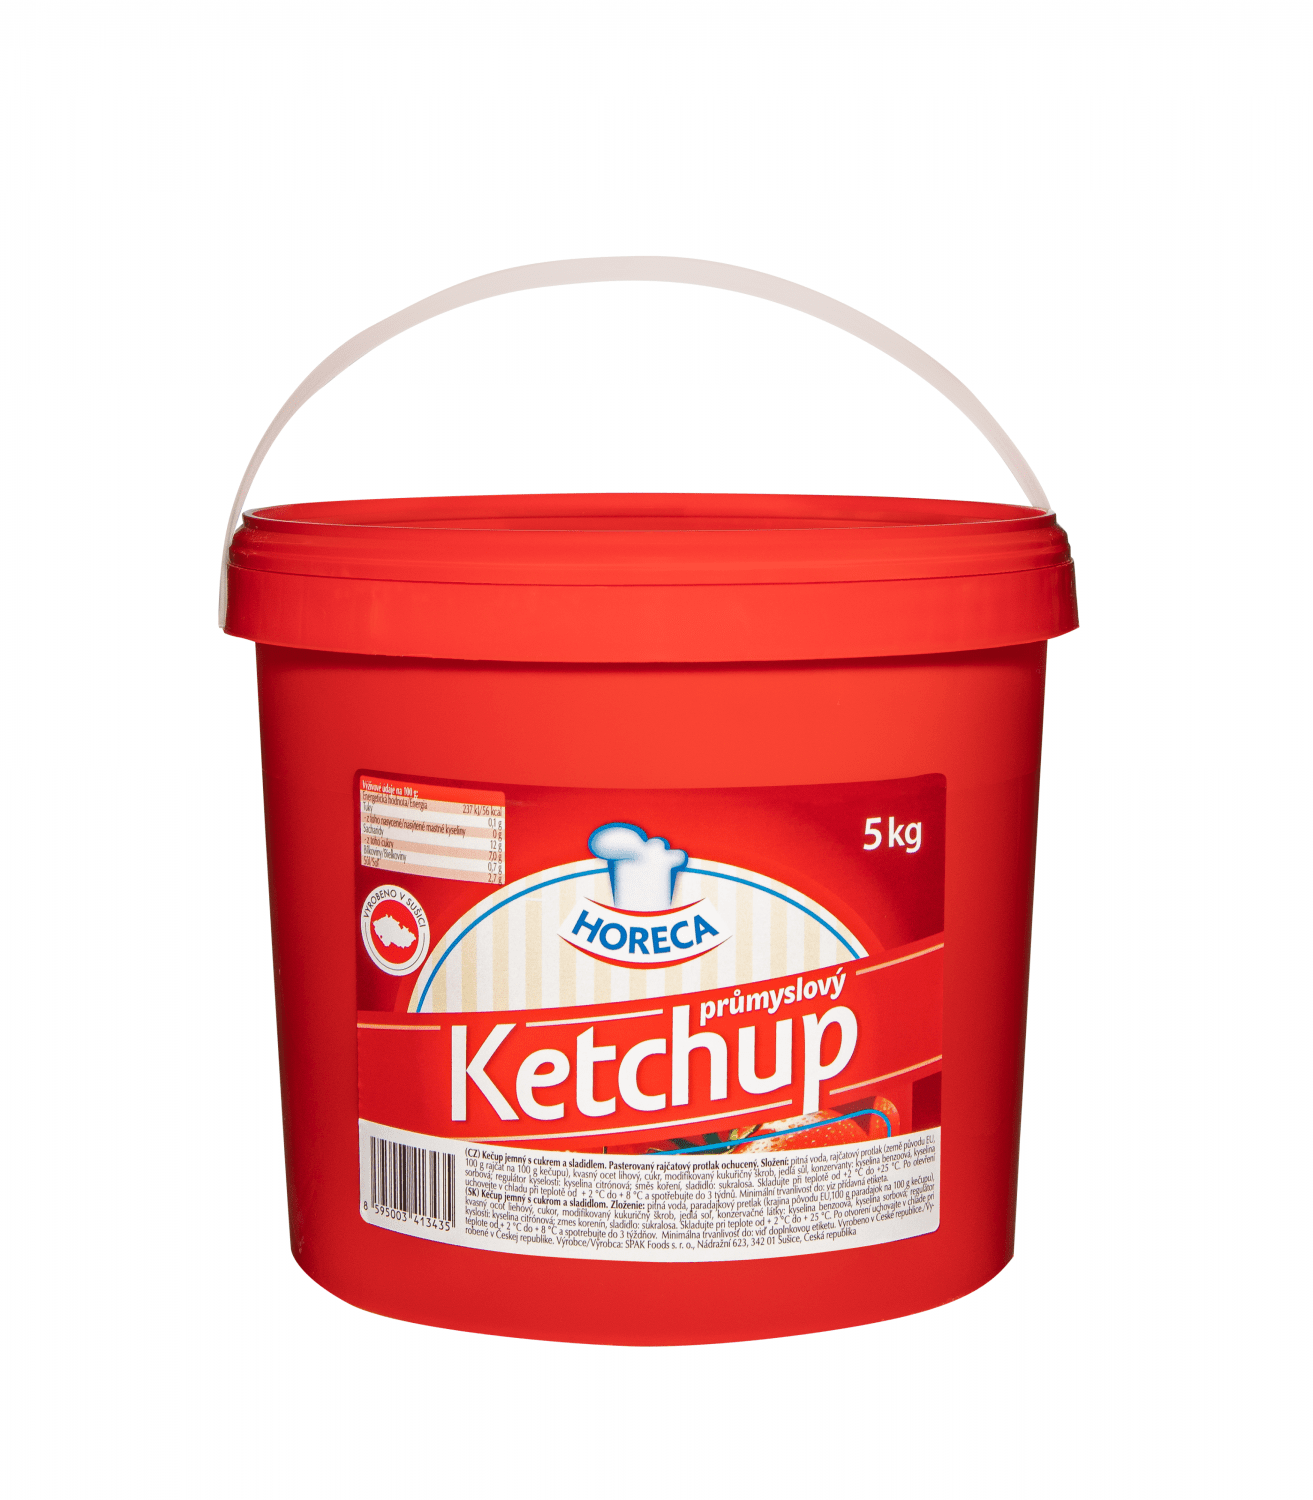 Ketchup-prumyslovy-Horeca-5kg